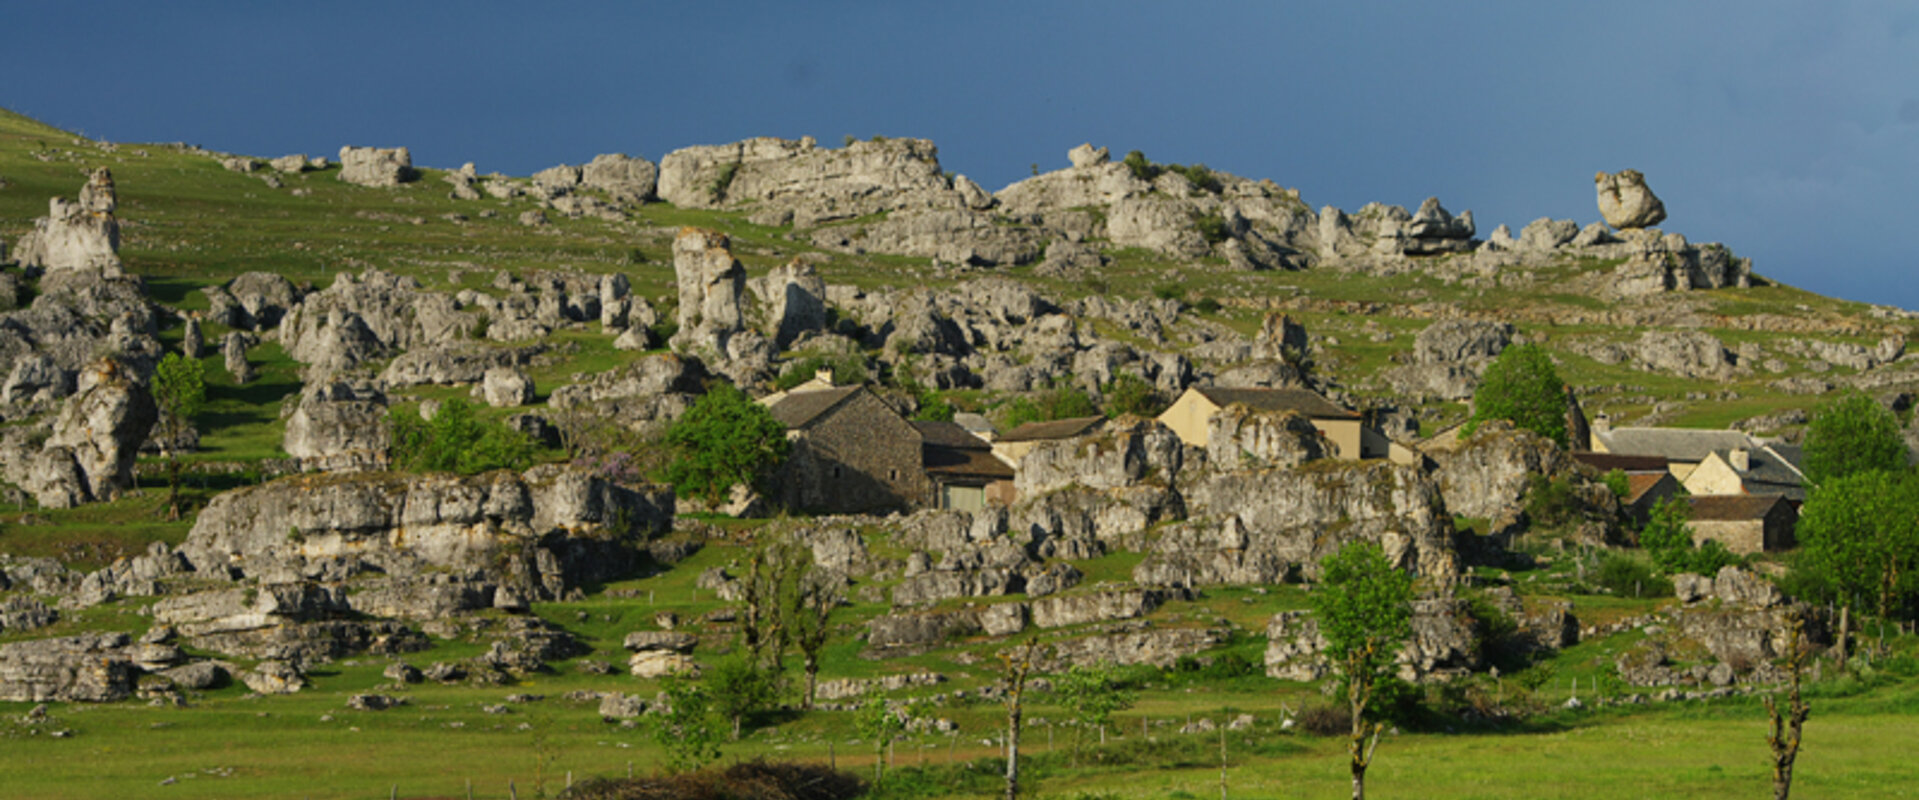 Commune des Gorges du Tarn Causses - Le hameau de Nissoulogres